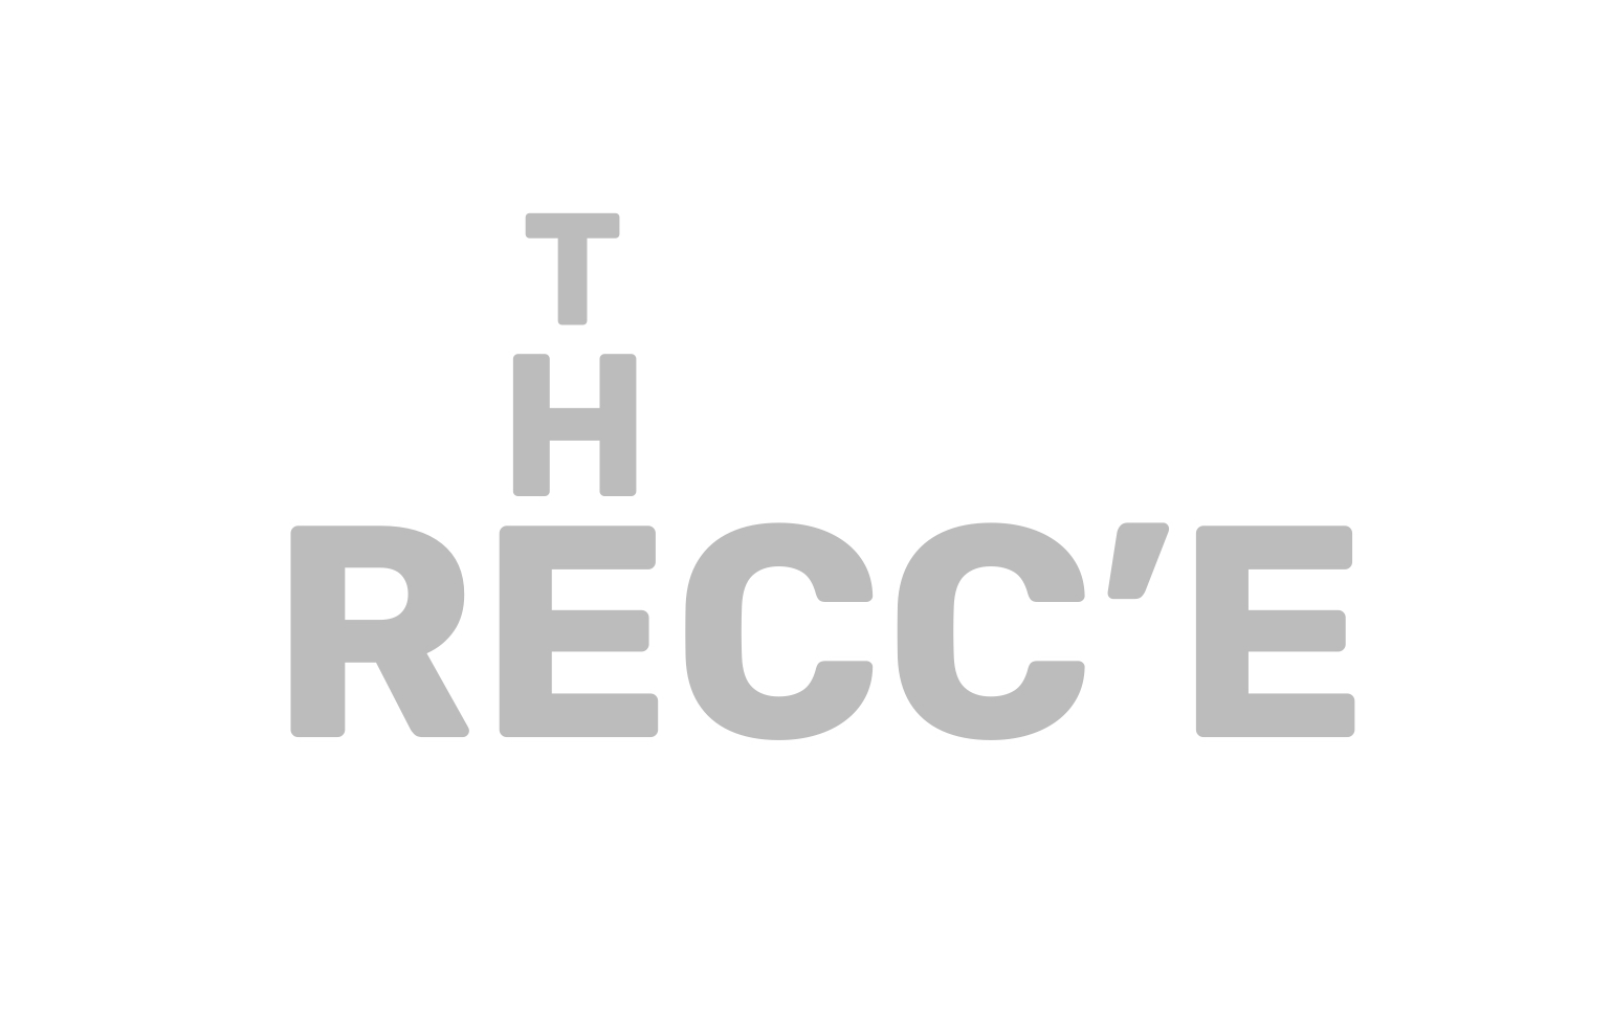 The RECC’E